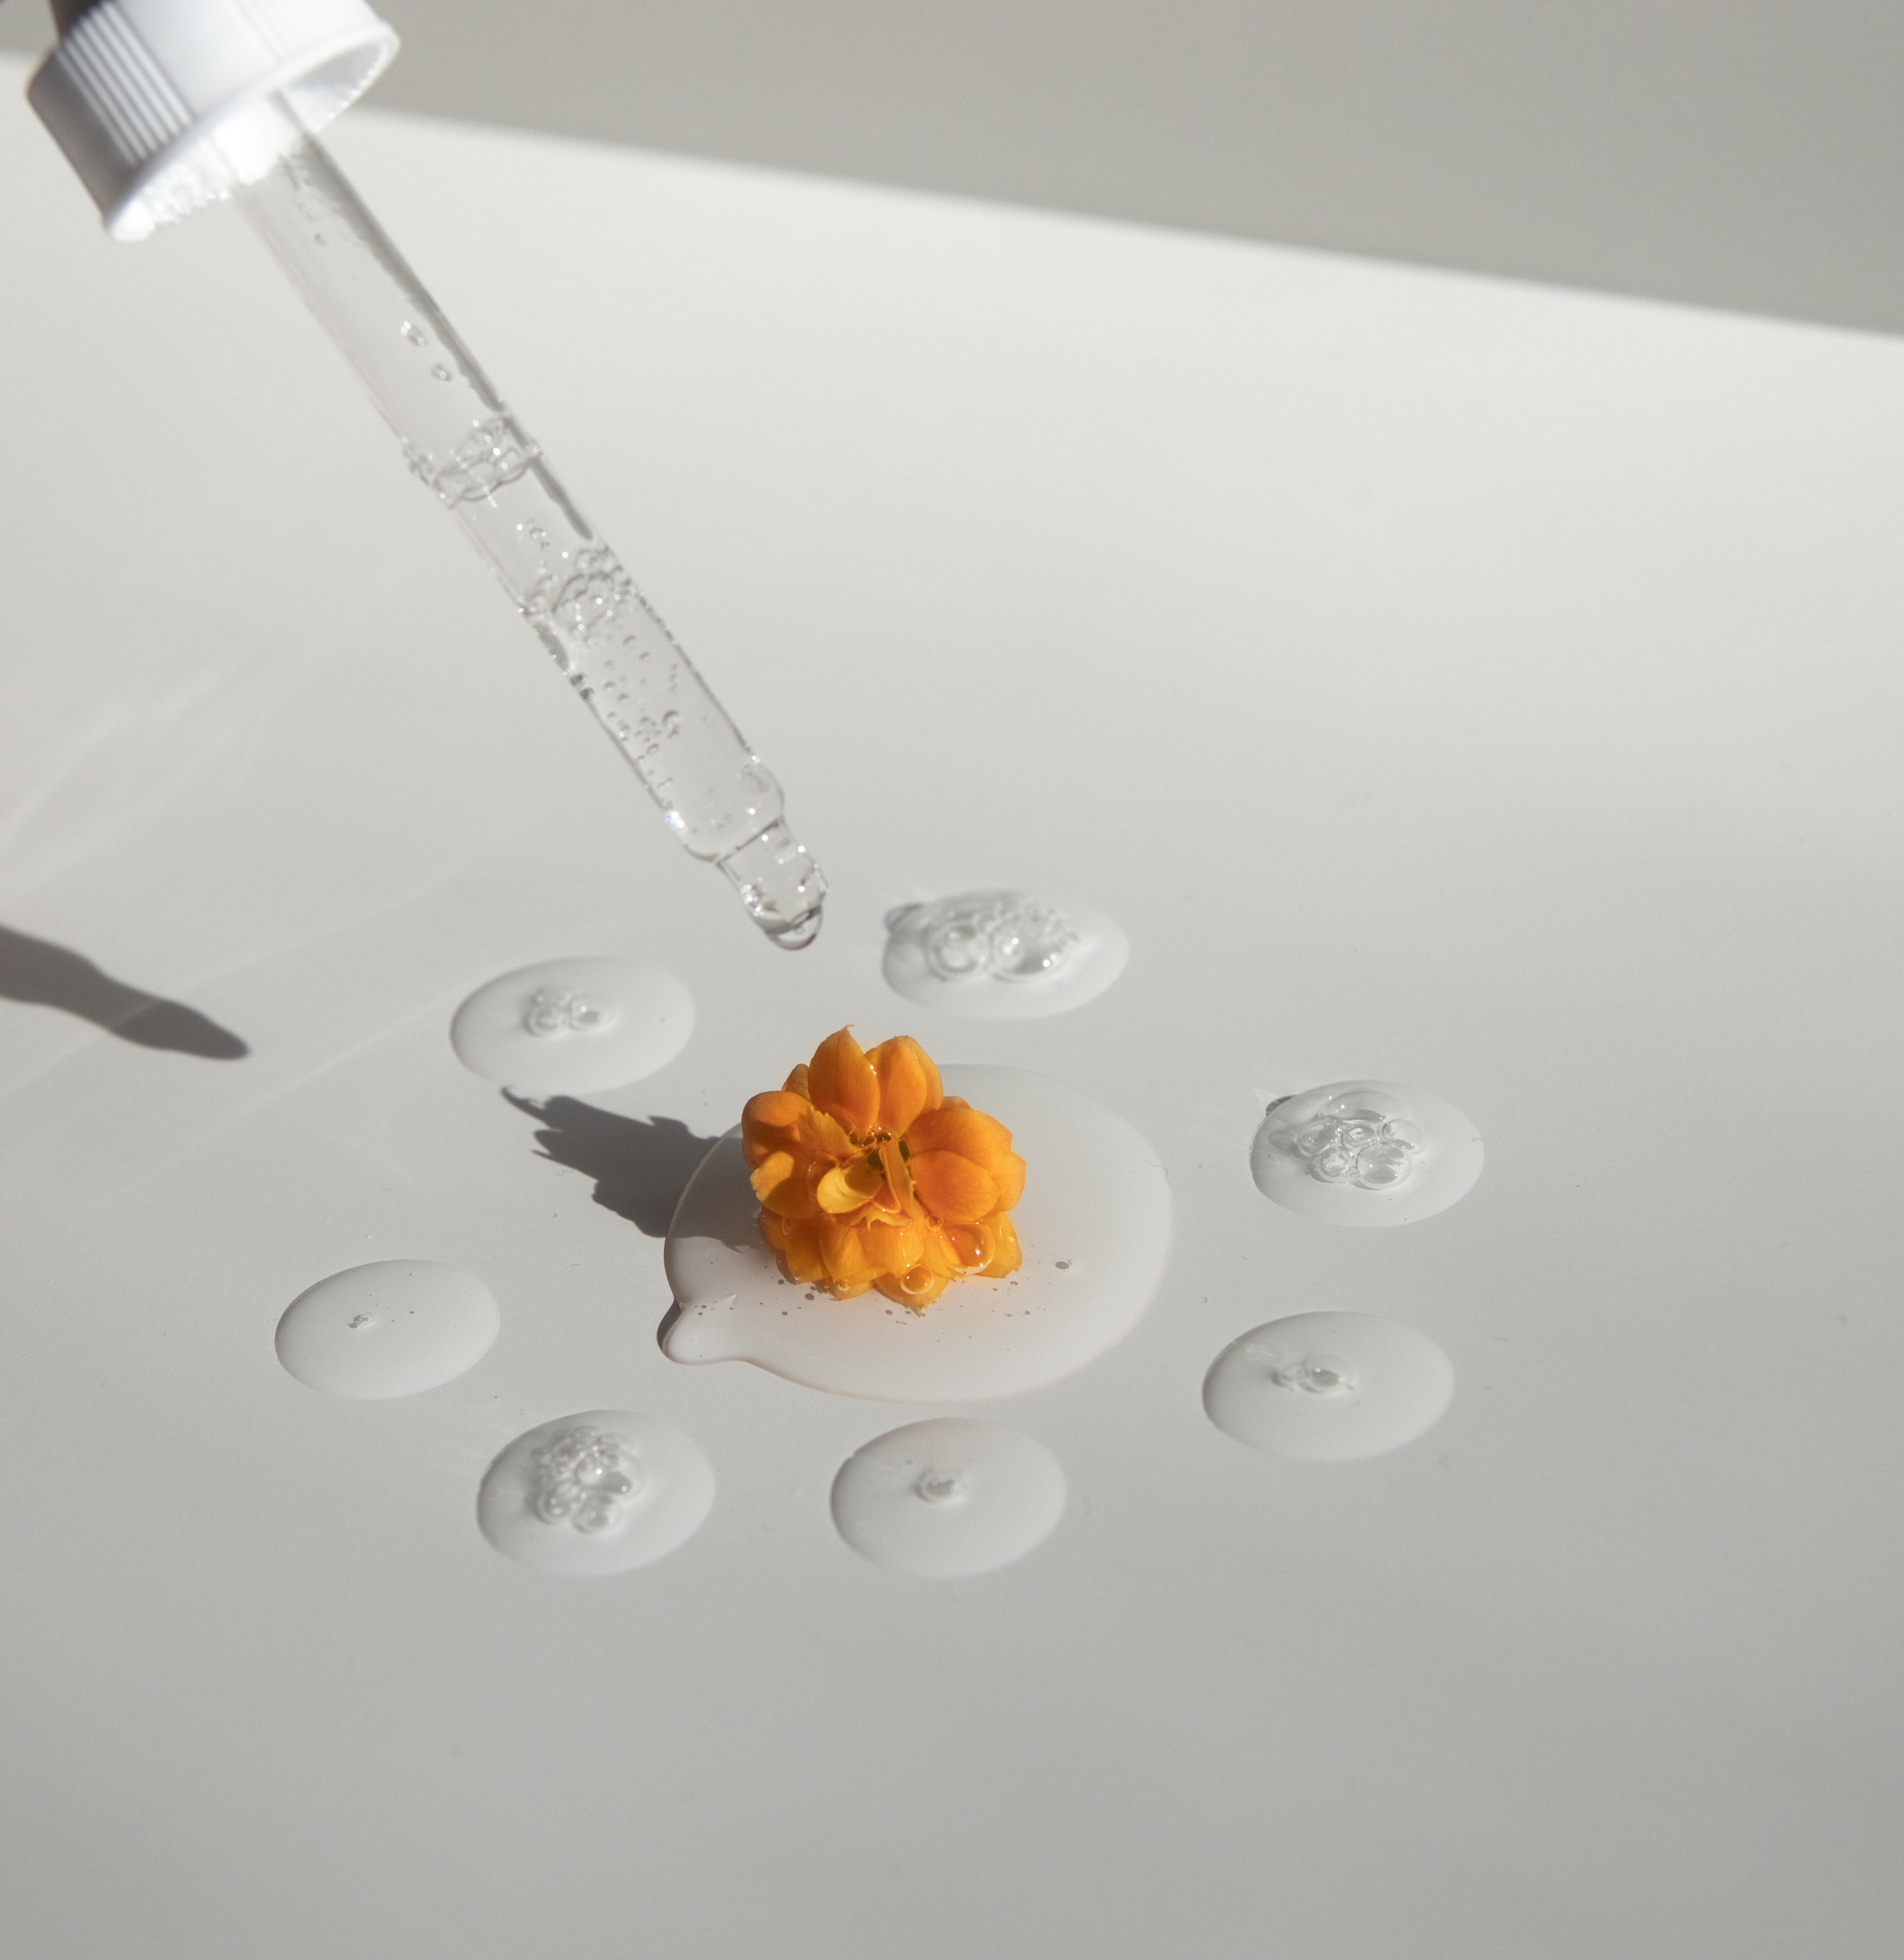 Pipette mit tropft durchsichtige Flüssigkeit auf den Tisch mit orangener Blüte